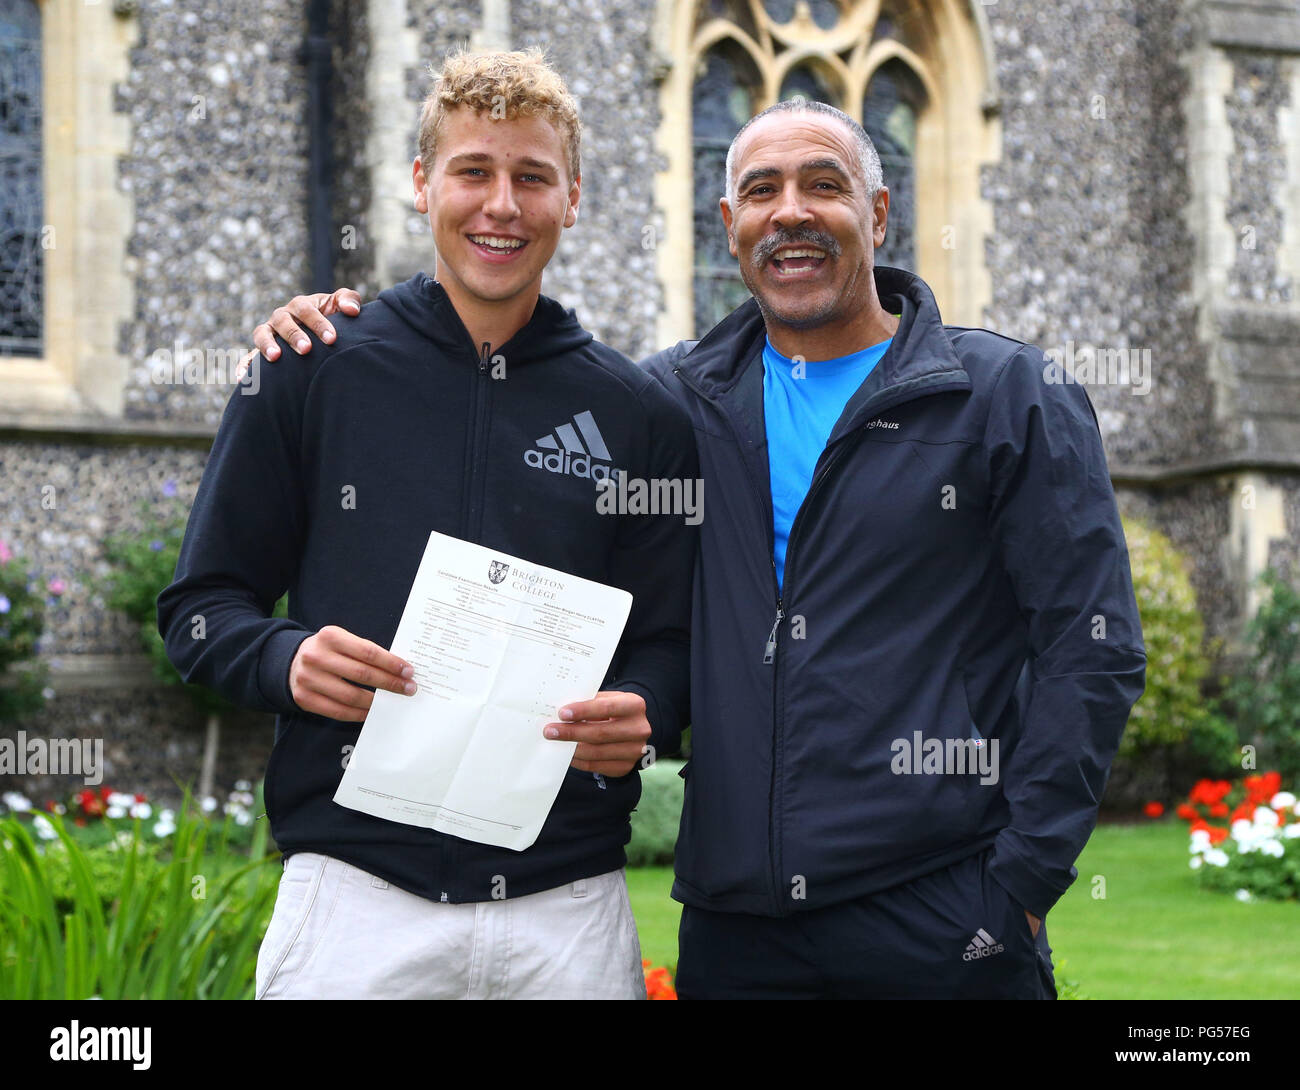 Alex Clayton feiert mit seinen Vater Olympiasieger Daley Thompson nach dem  Sammeln seiner GCSE Ergebnisse am Brighton College, in Brighton, Sussex  Stockfotografie - Alamy